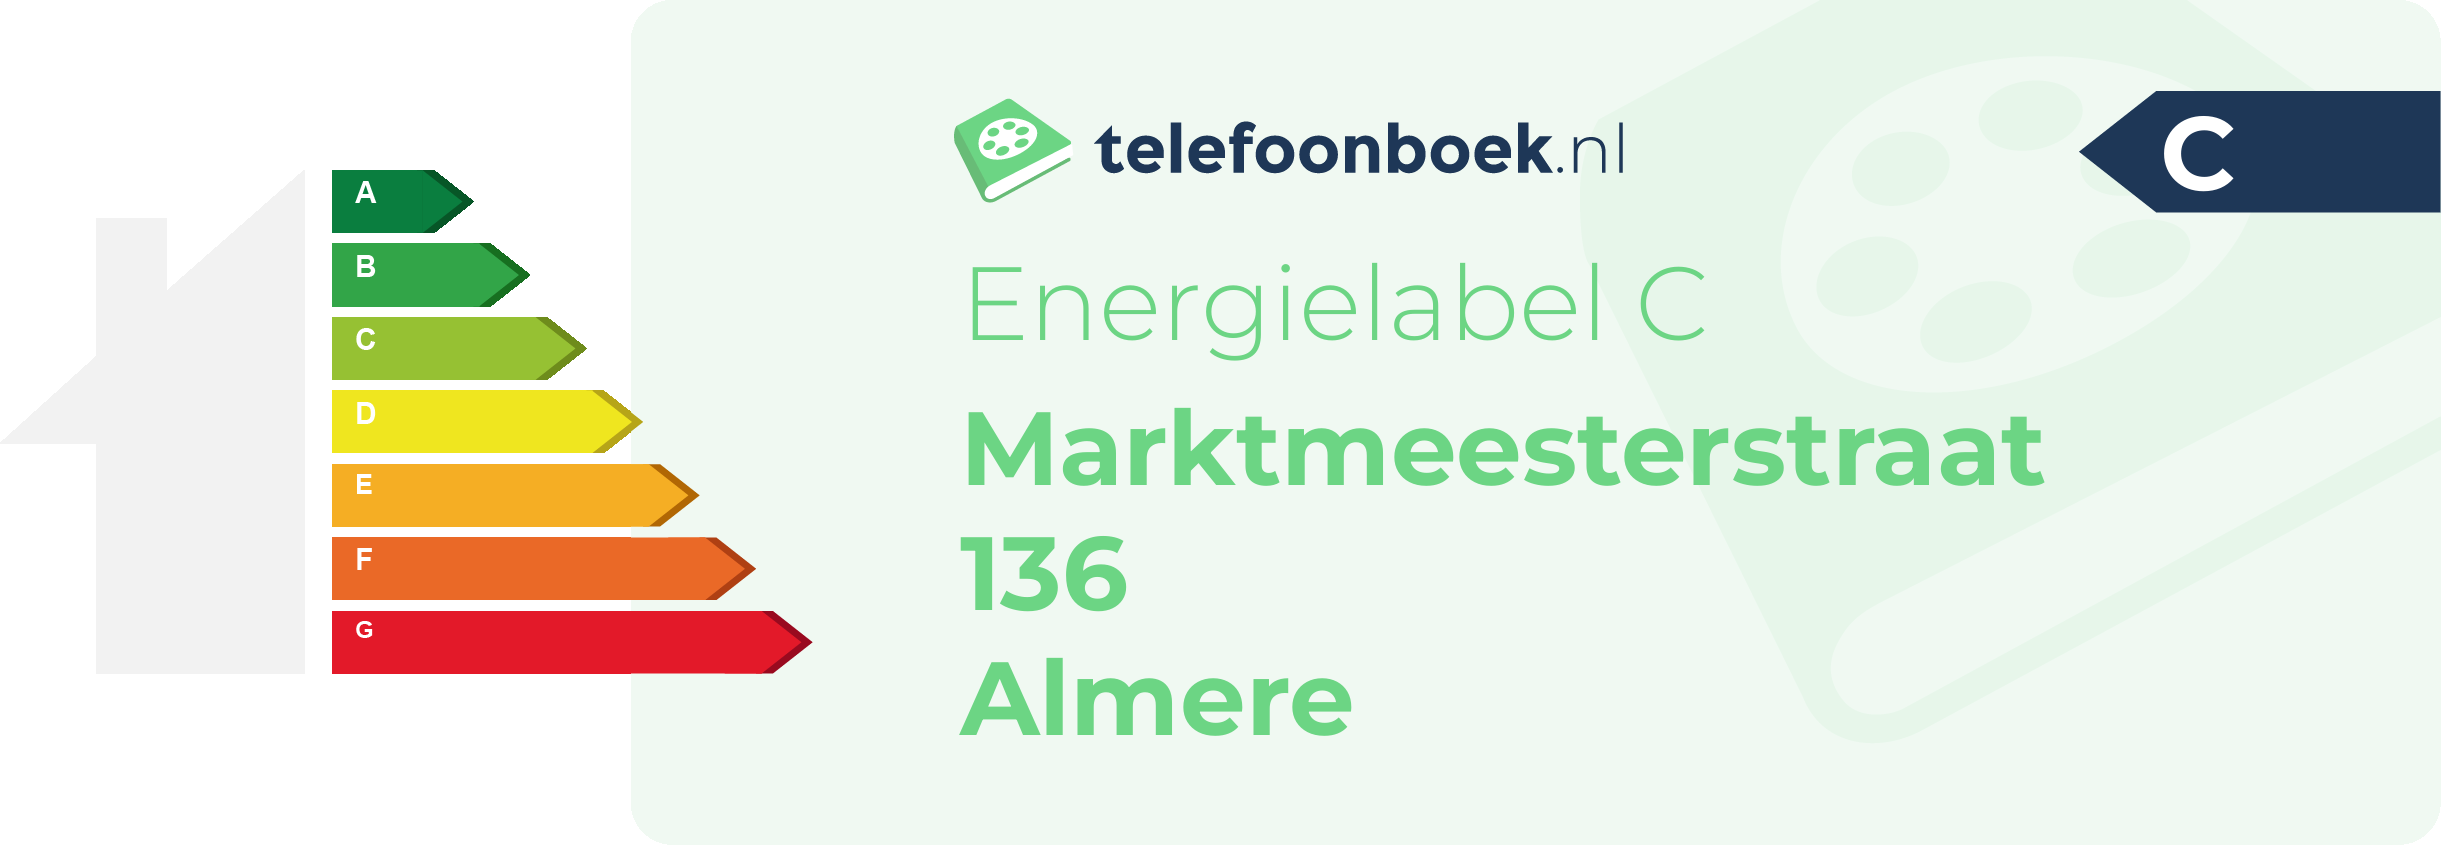 Energielabel Marktmeesterstraat 136 Almere